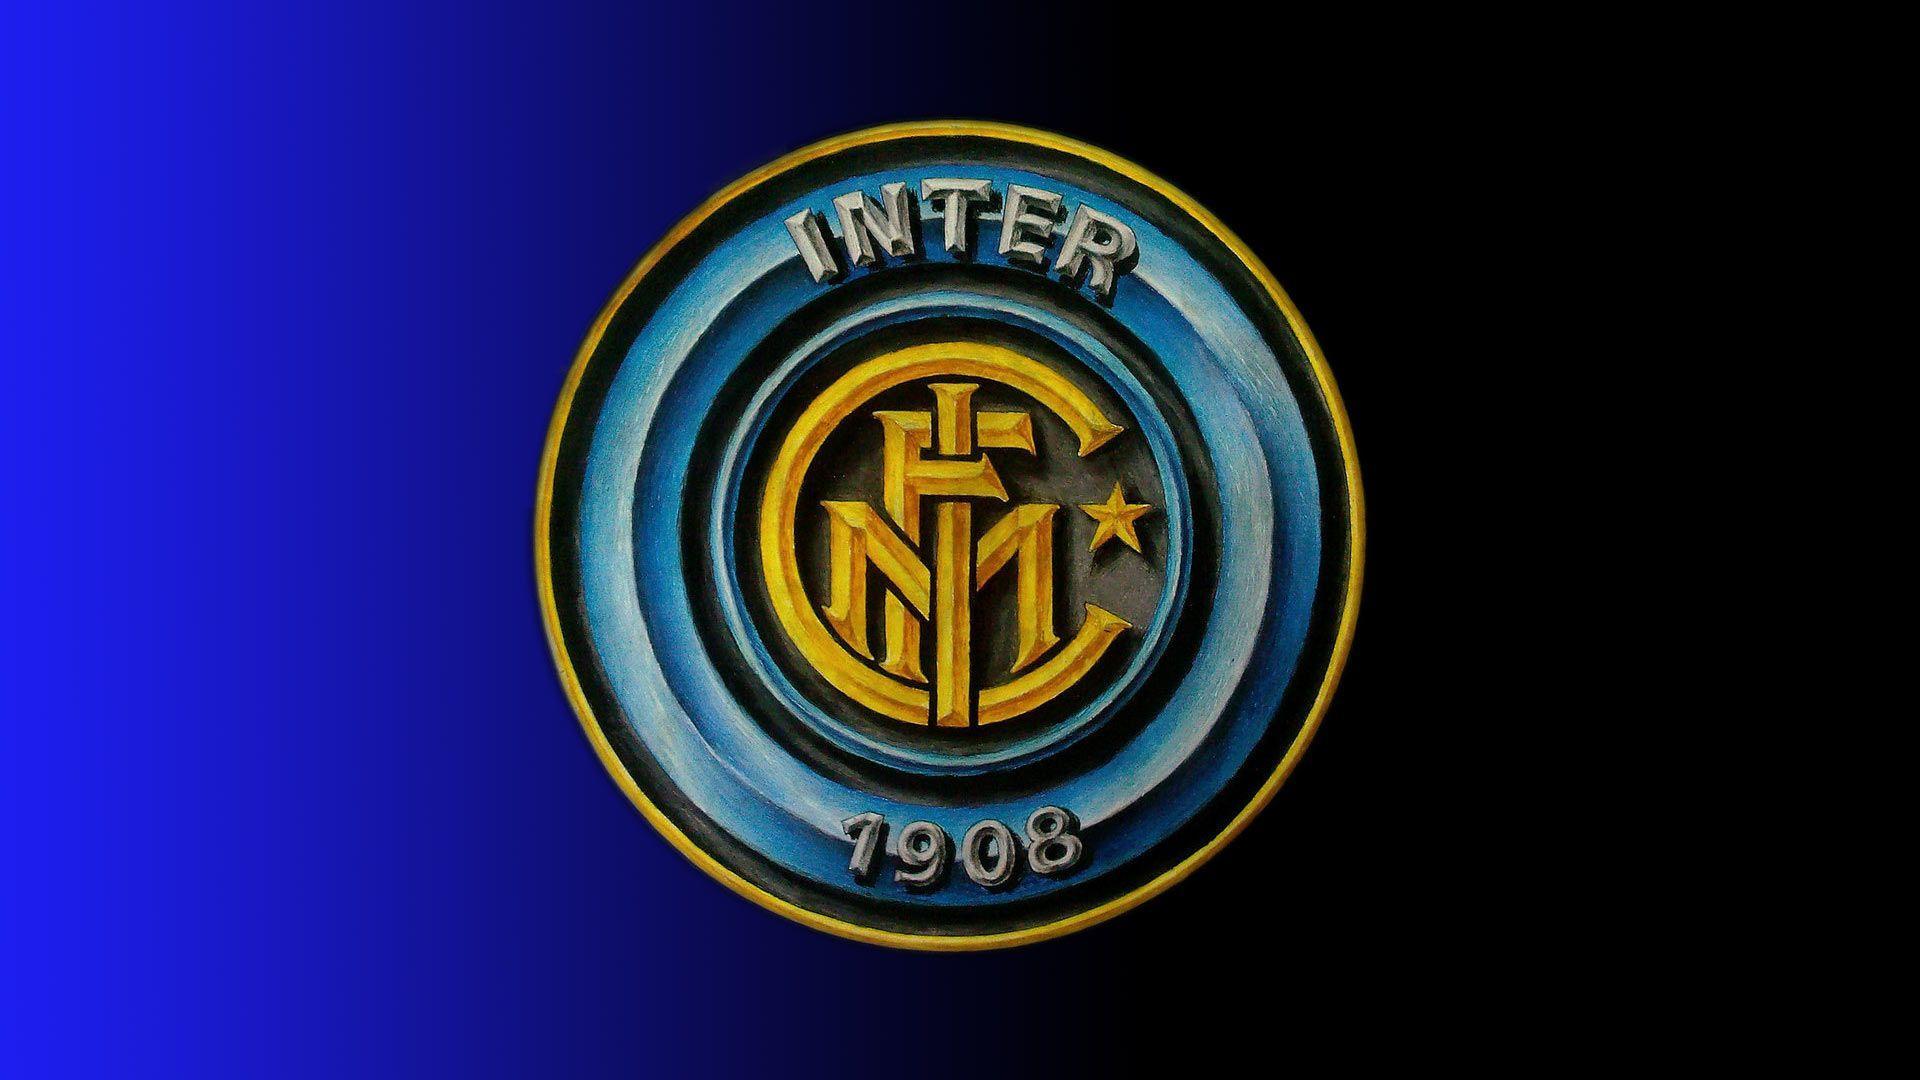 Inter Milan FC Football Logo Wallpaper. High Definition